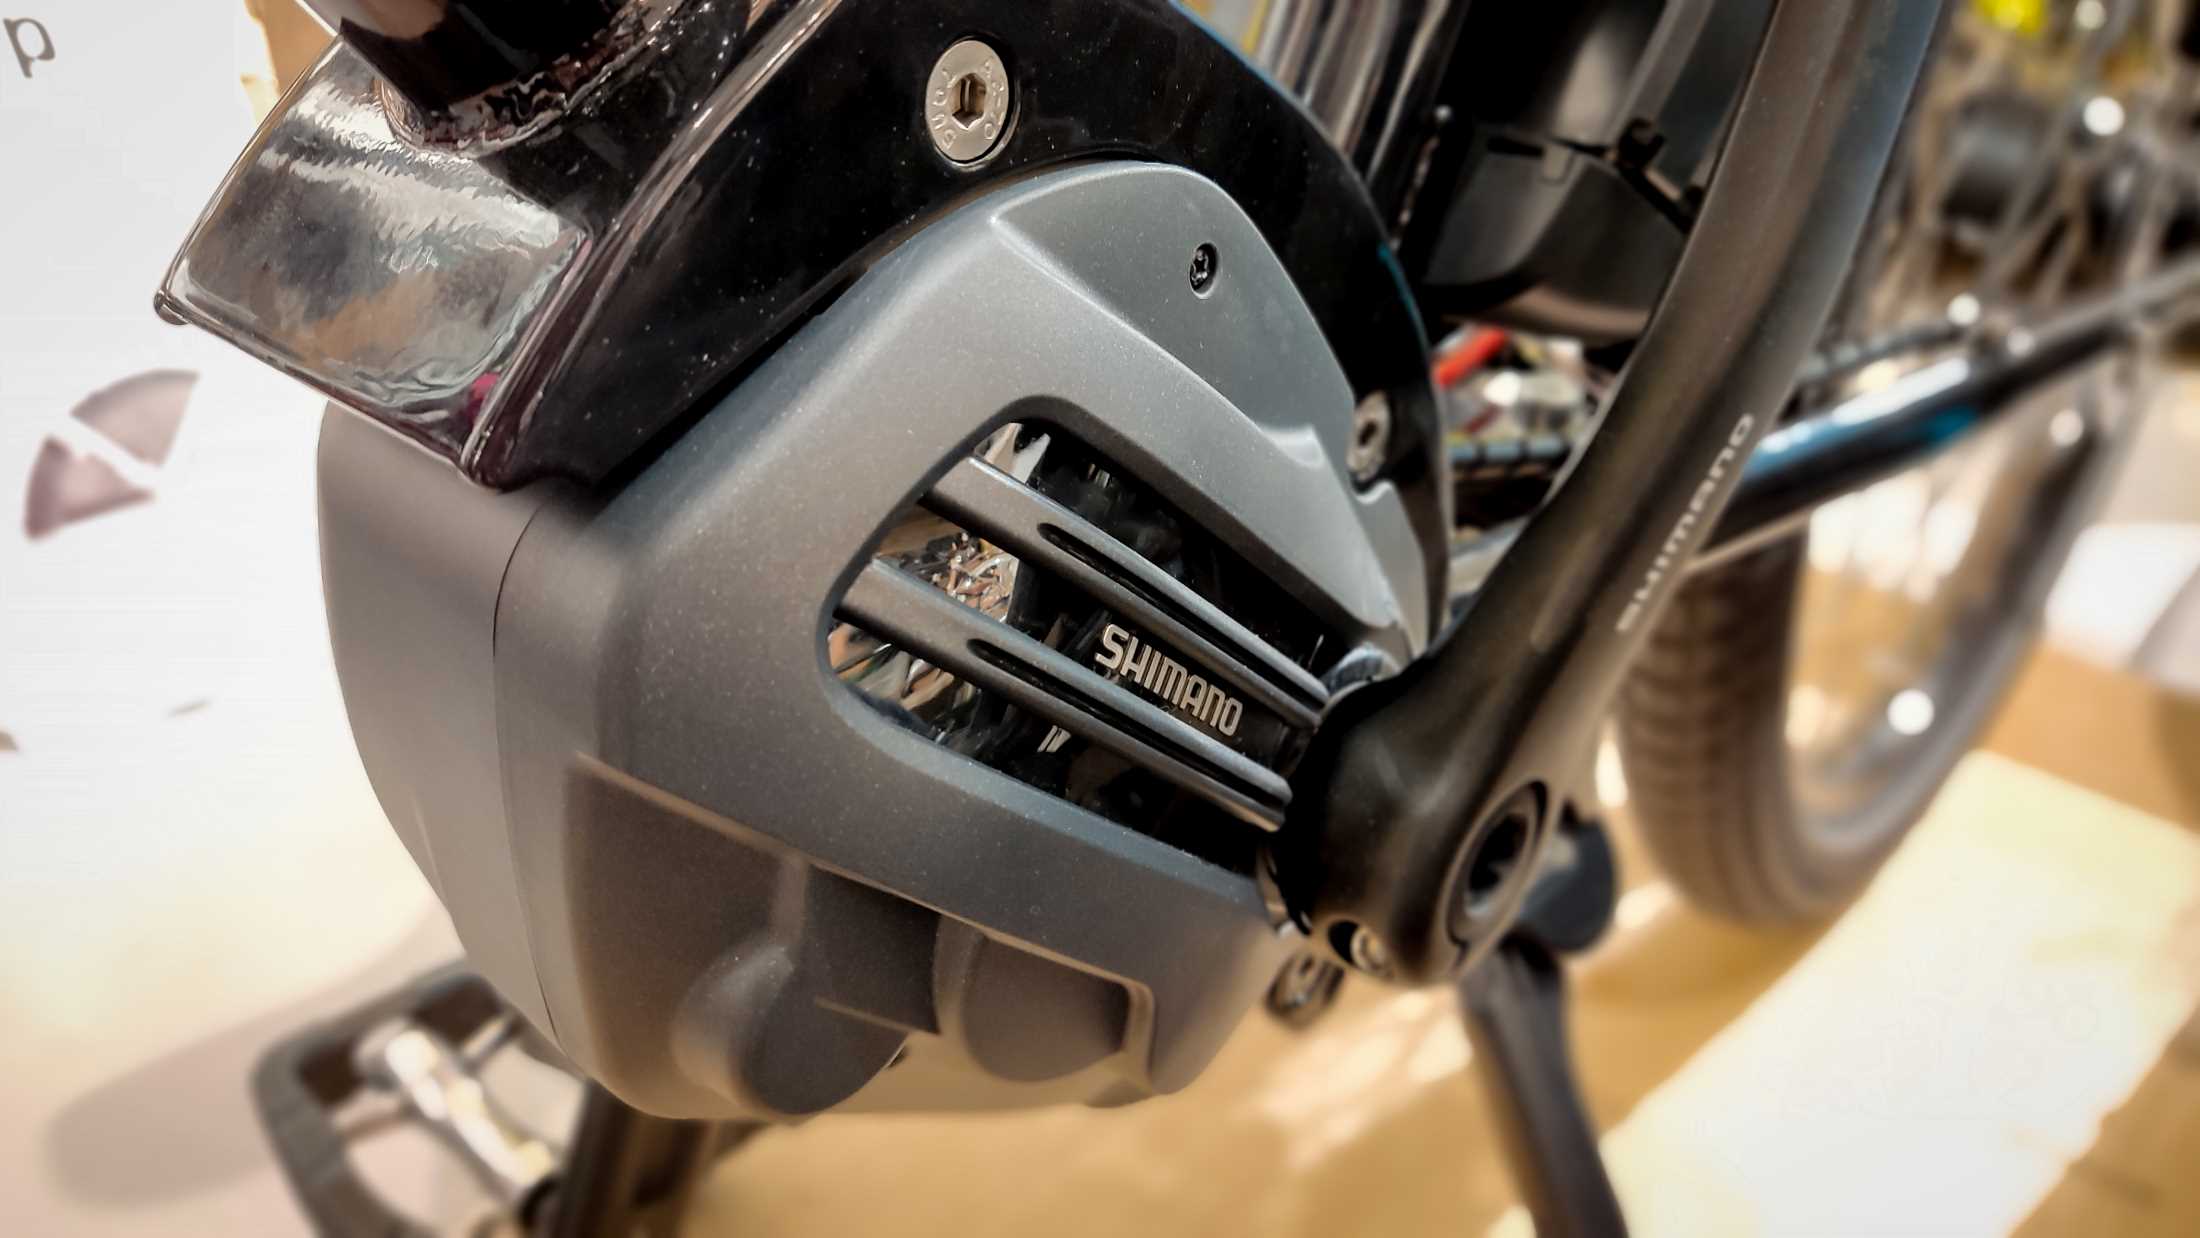 Shimano e-bike motor